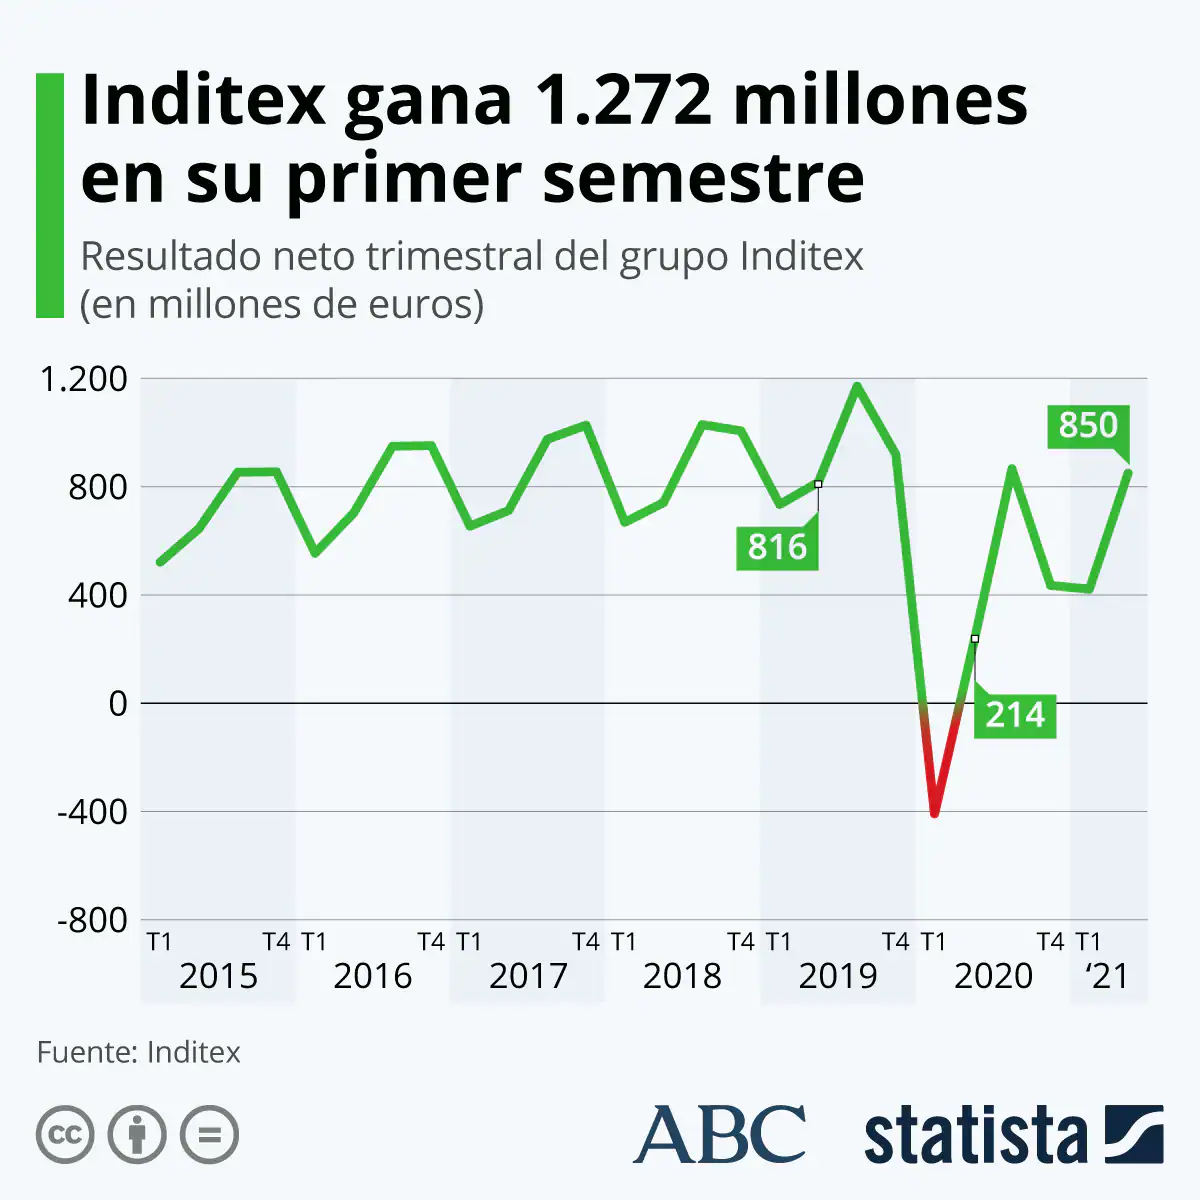 Inditex deja atrás la crisis y bate récords de ventas y beneficio en un segundo trimestre